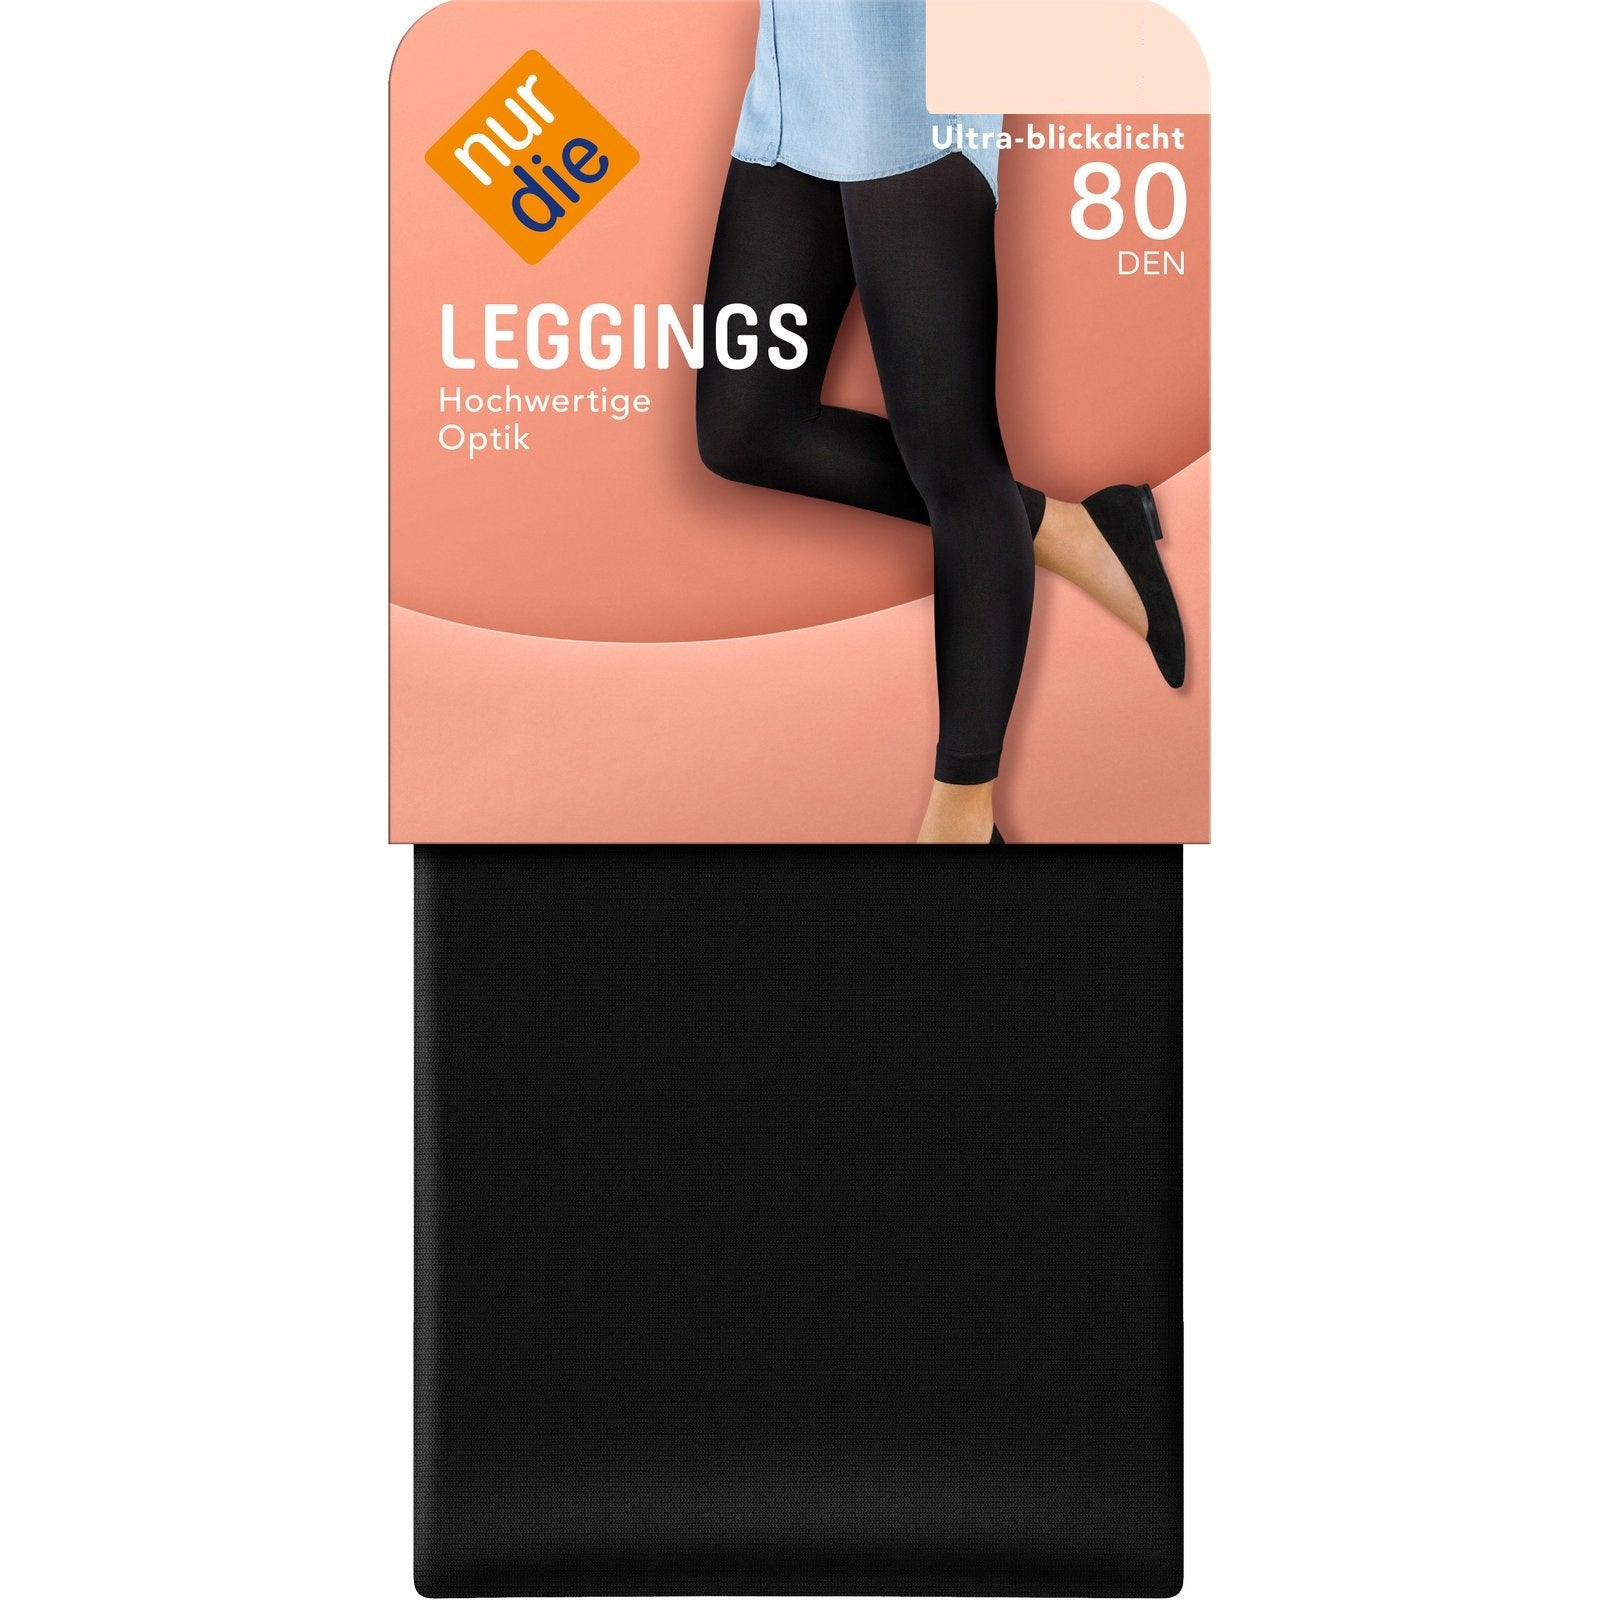 NurDie Leggings 80 Den Extra Large (Case of 5)